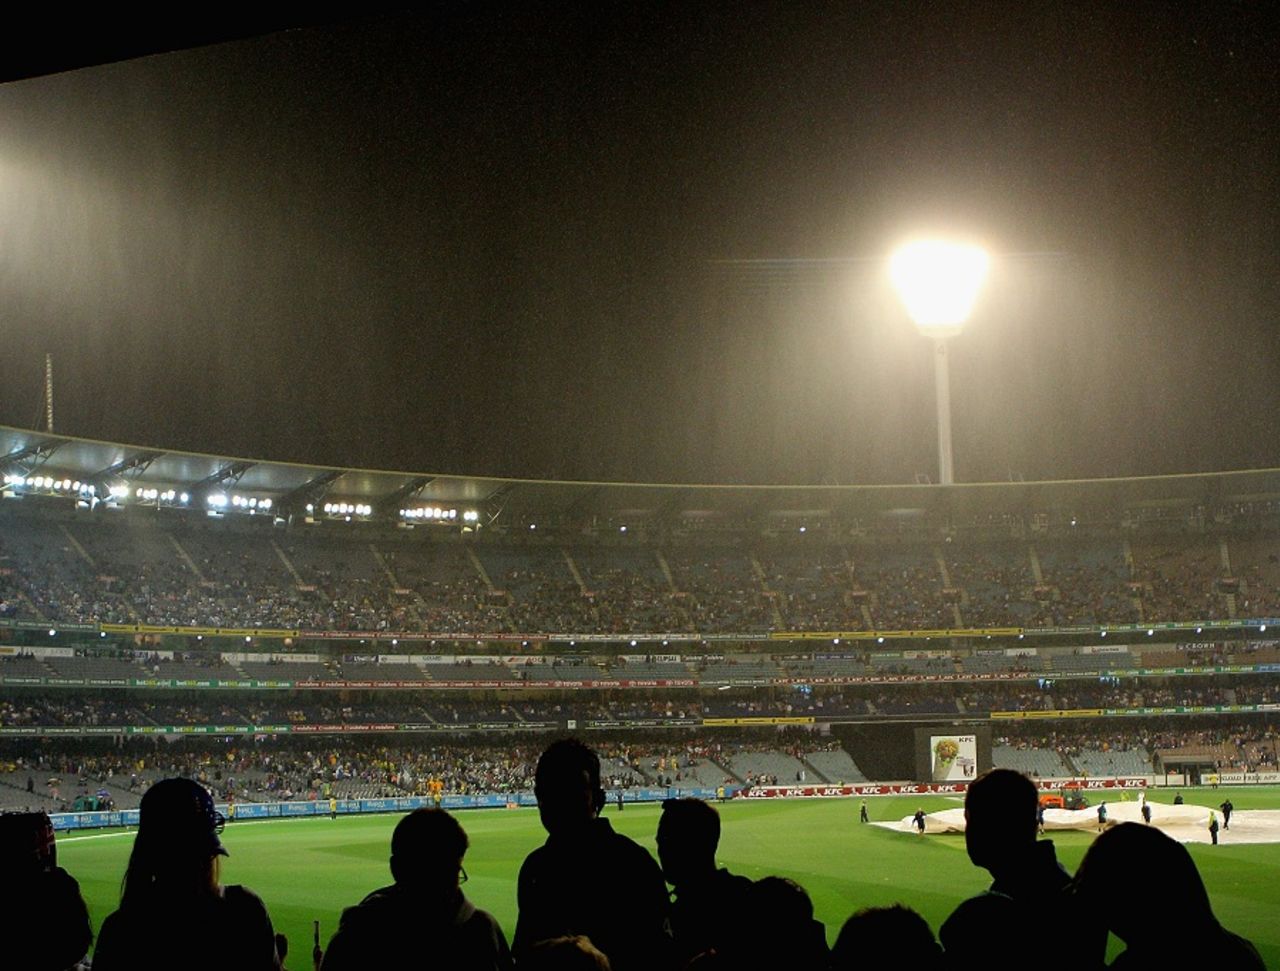 Rain interrupted play during the Australian innings, Australia v Sri Lanka, 2nd T20, Melbourne, January 28, 2013